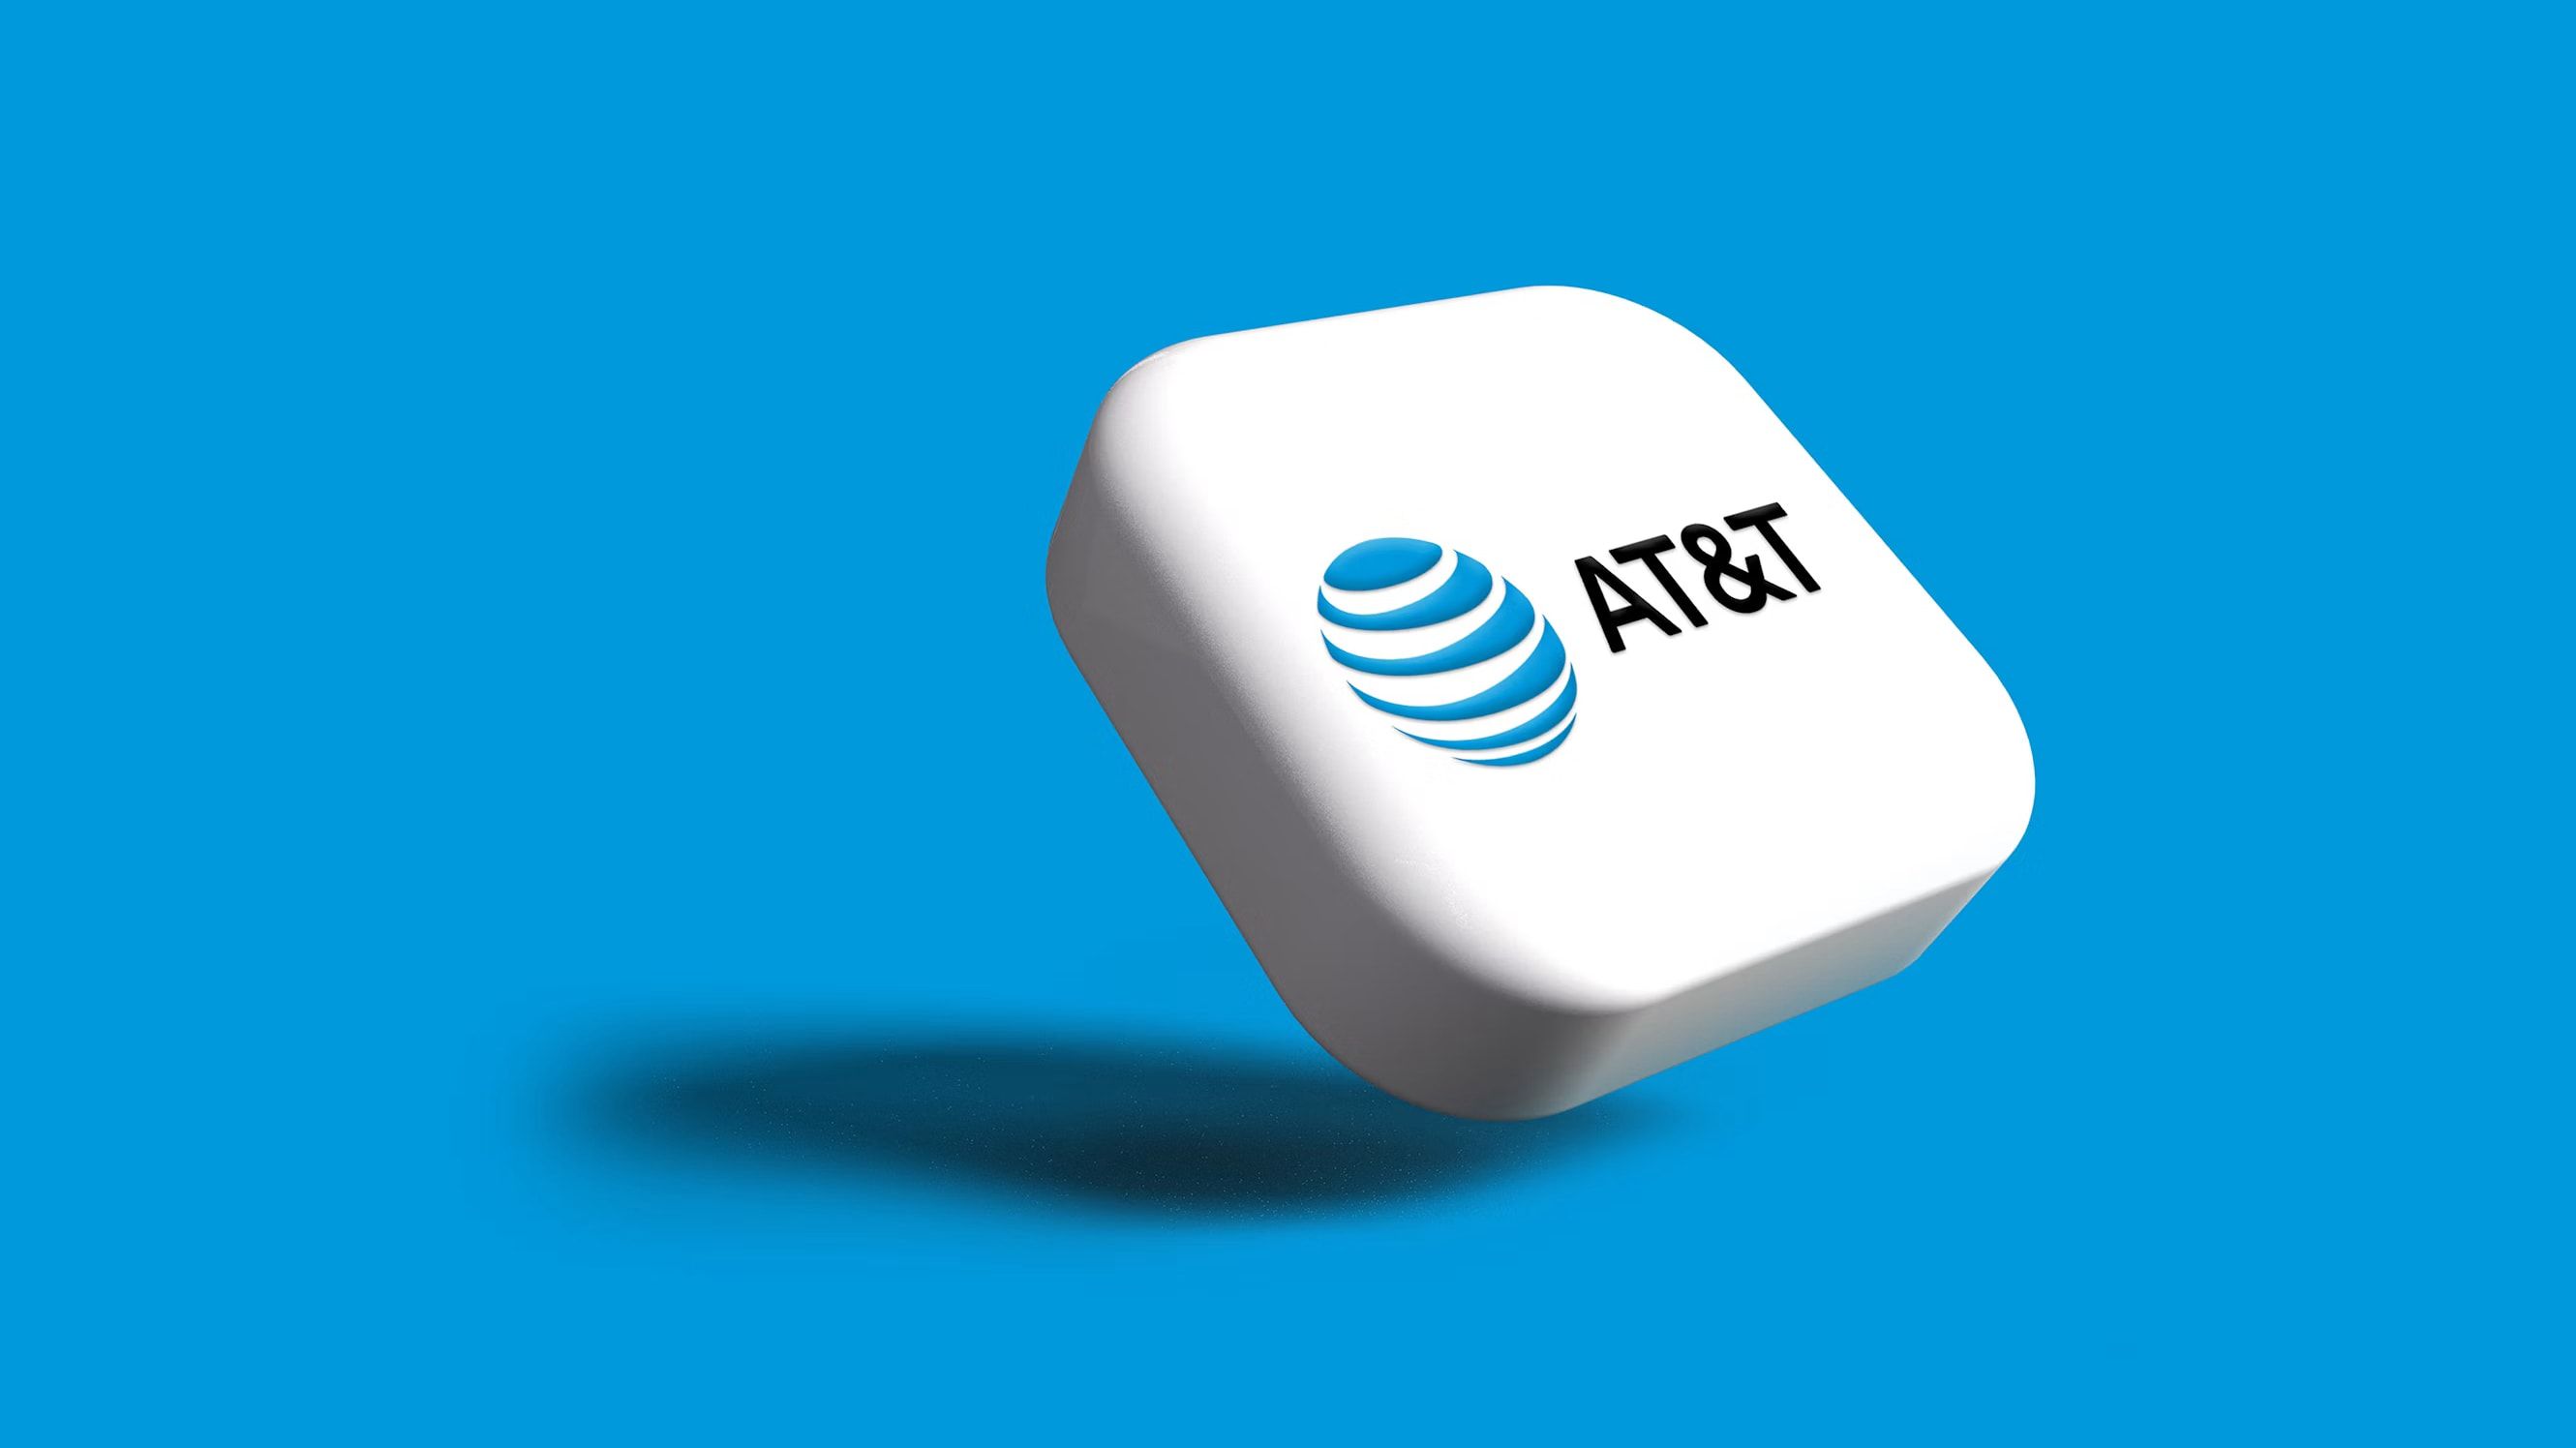 O logotipo da AT&T em um botão branco contra um fundo azul.